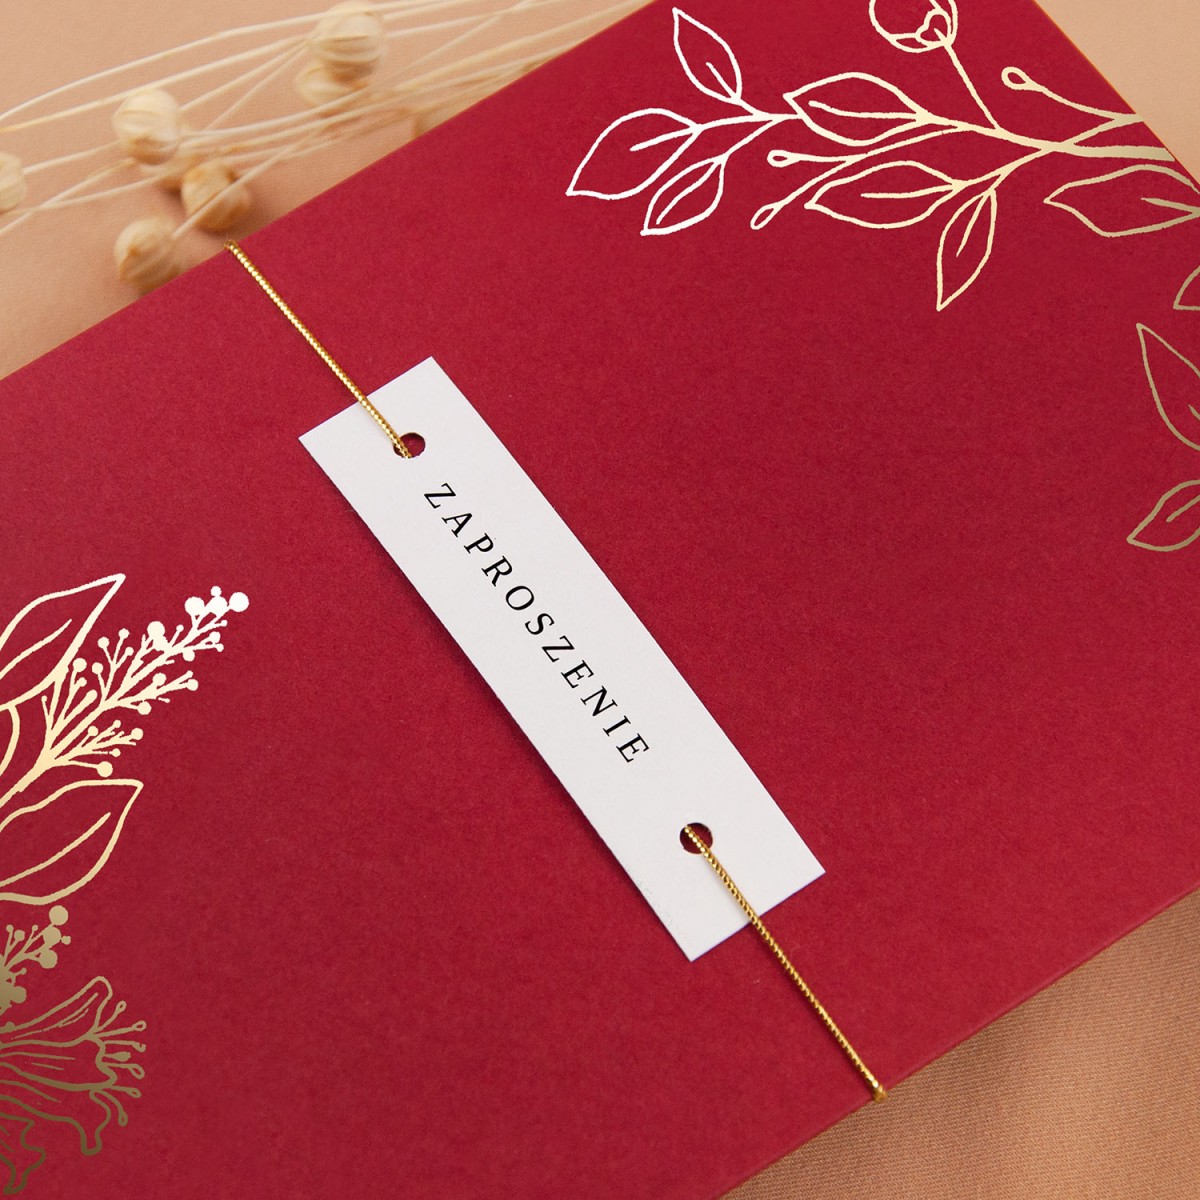 Zaproszenia Ślubne z etui w kolorze czerwonymi ze złoconymi gałązkami - Glamour Red Case